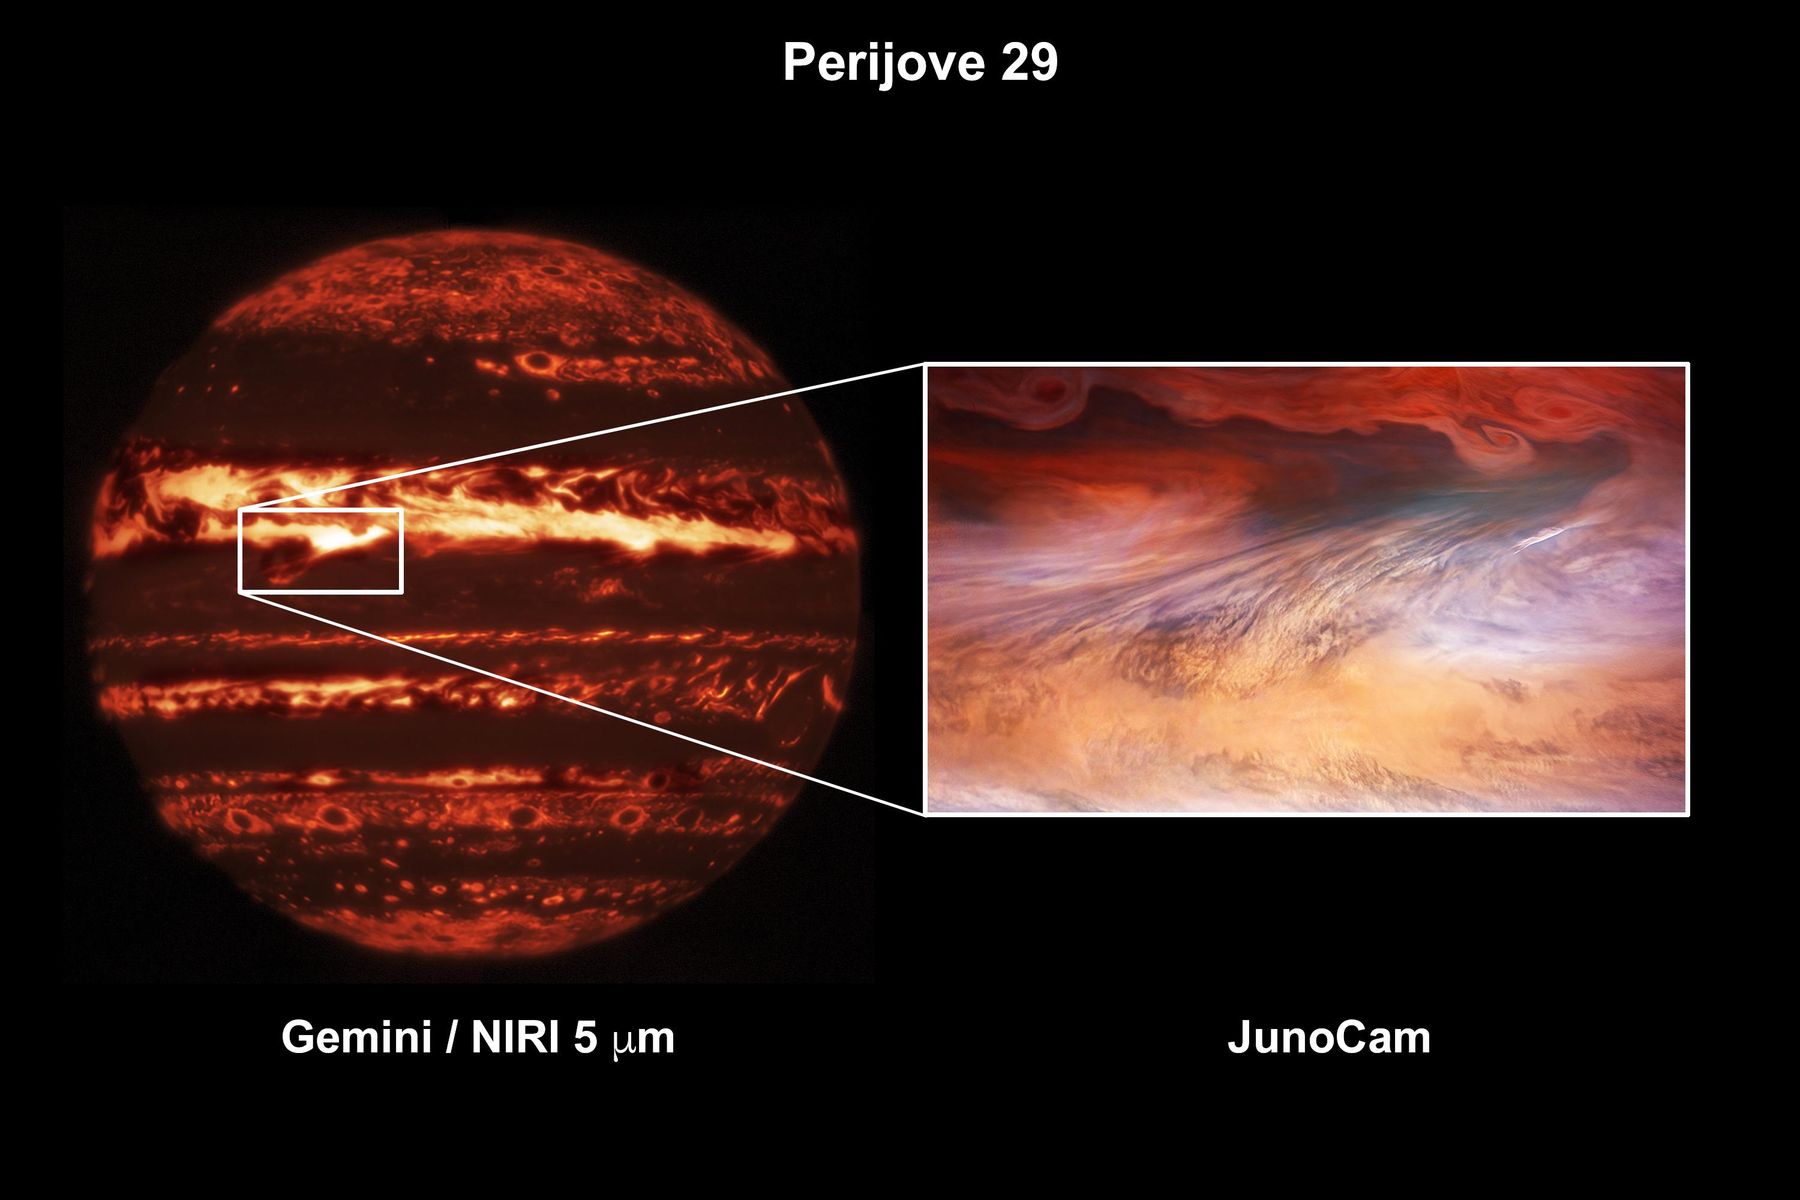 มองจุดร้อนบนดาวพฤหัสบดีผ่านกล้อง JunoCam ของยานอวกาศจูโน